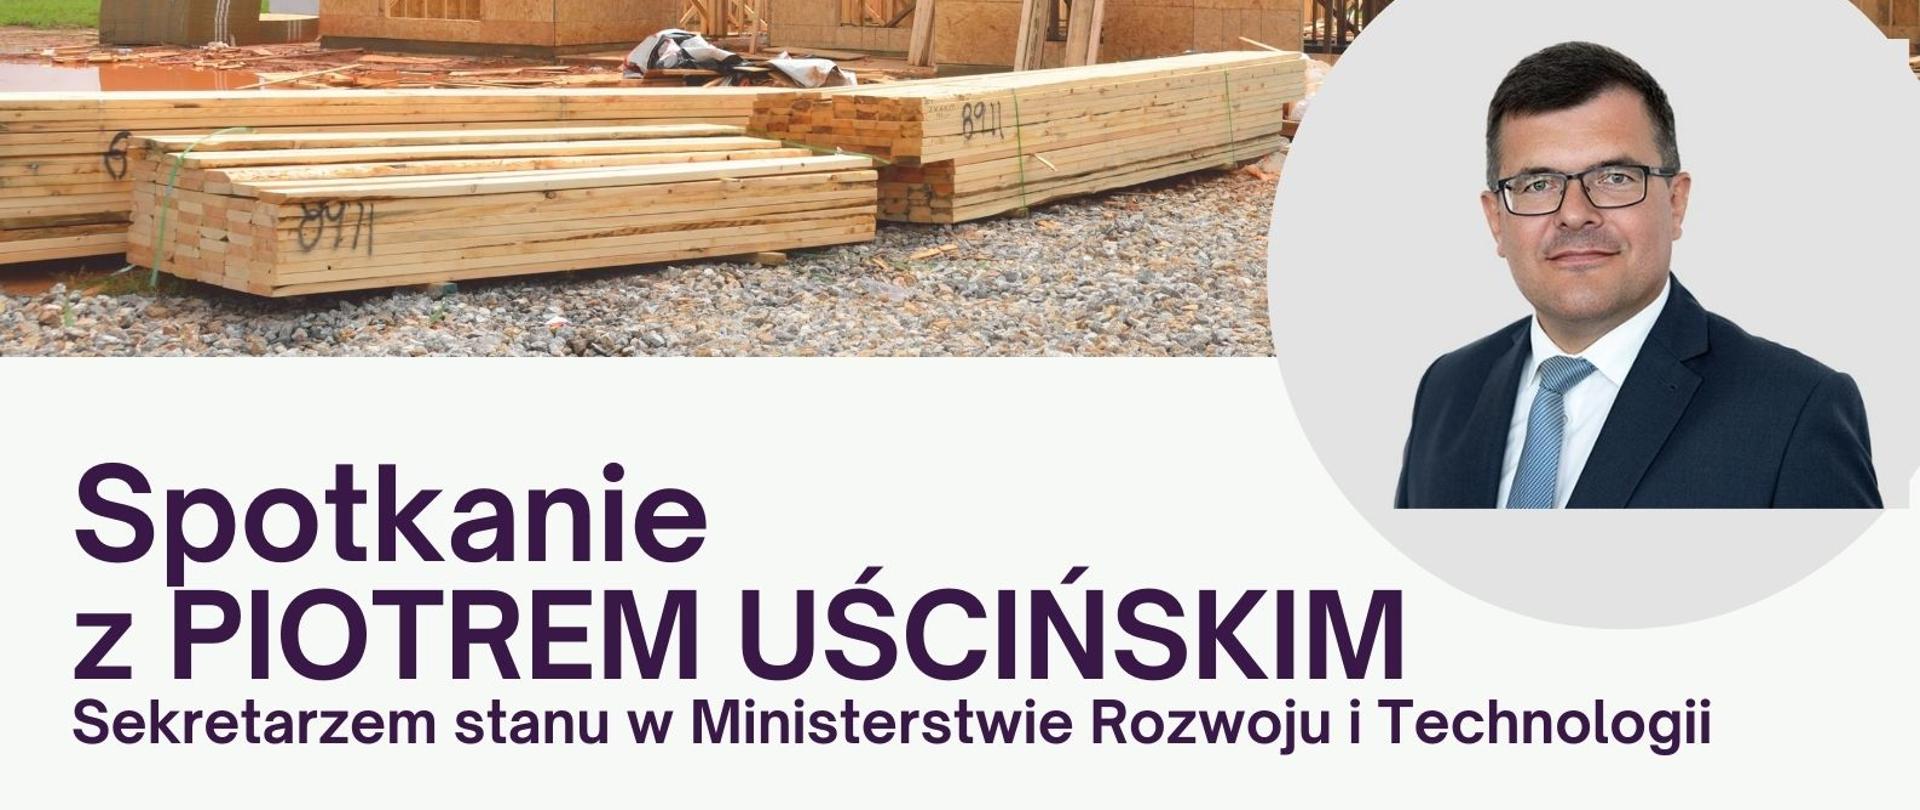 Plakat informacyjny - Spotkanie z Piotrem Uścińskim sekretarzem stanu w Ministerstwie Rozwoju i Technologii